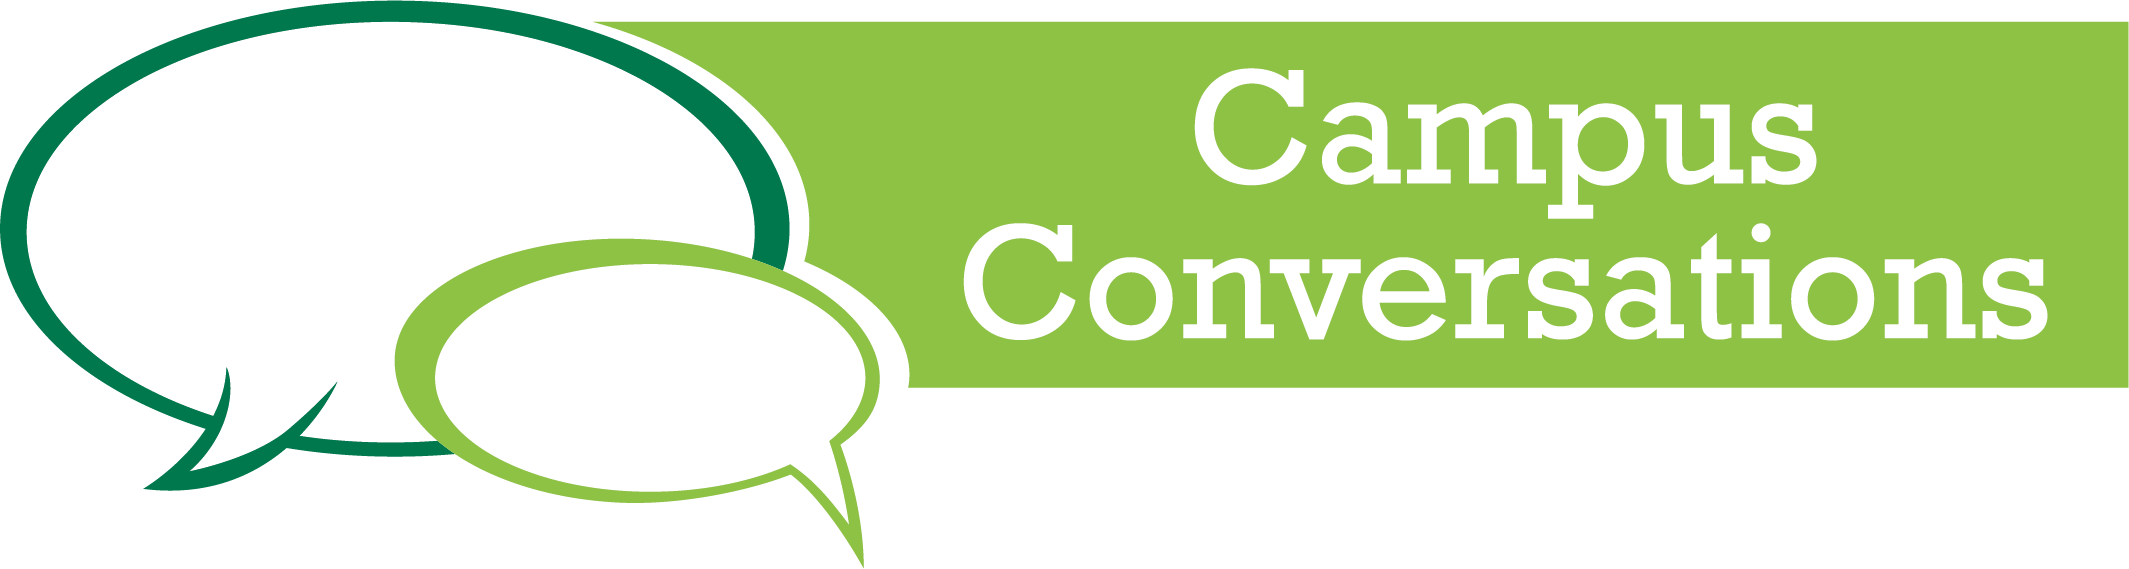 Campus Conversation Icon